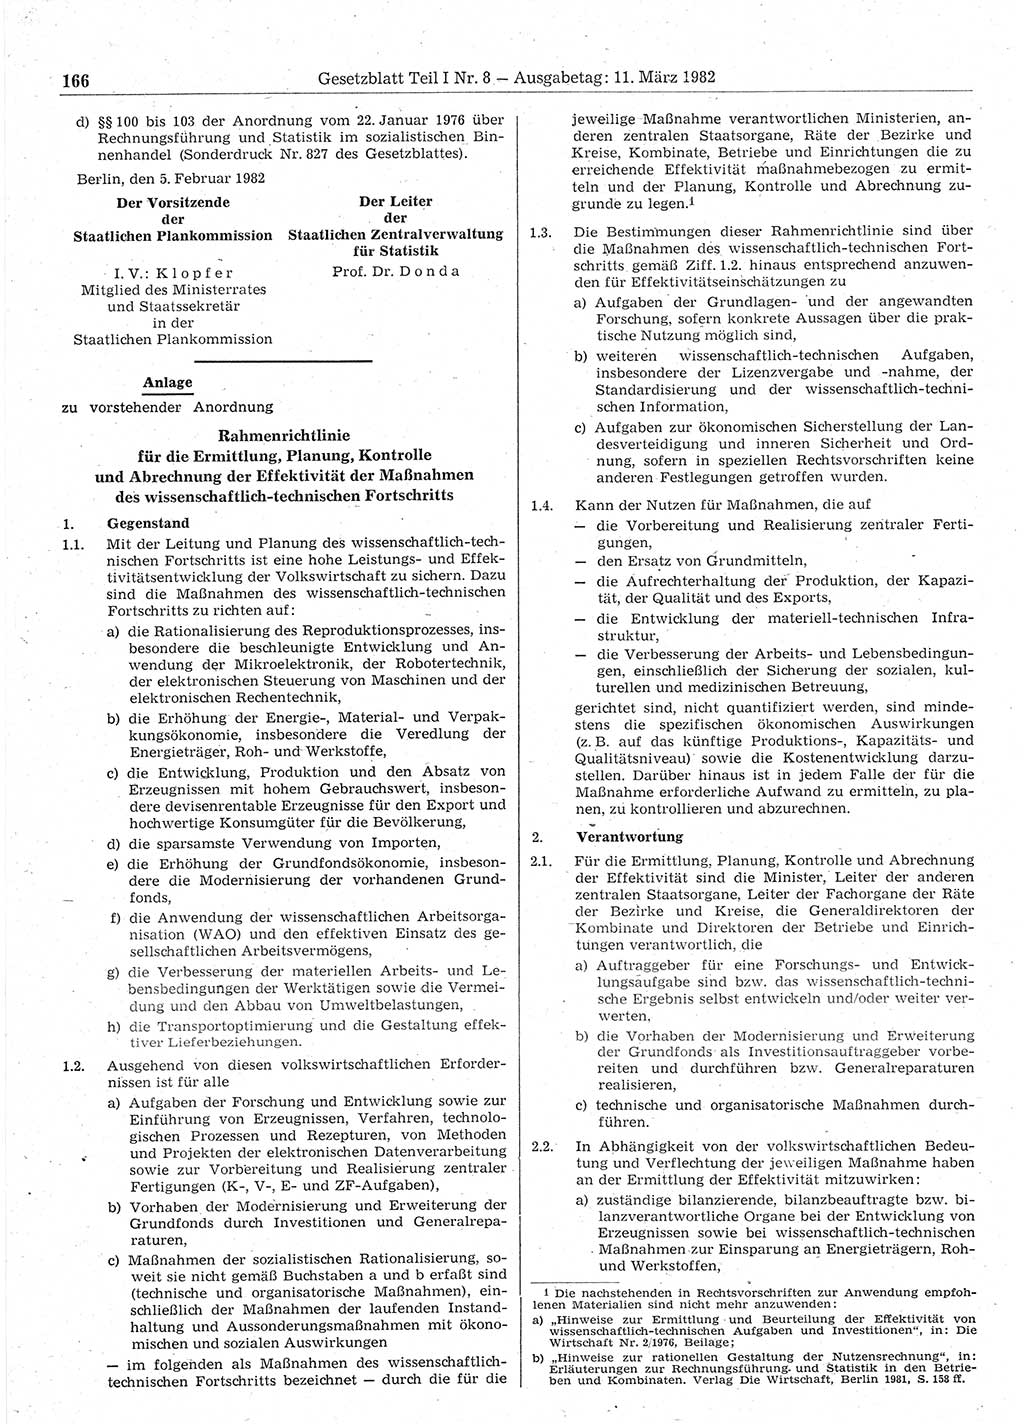 Gesetzblatt (GBl.) der Deutschen Demokratischen Republik (DDR) Teil Ⅰ 1982, Seite 166 (GBl. DDR Ⅰ 1982, S. 166)